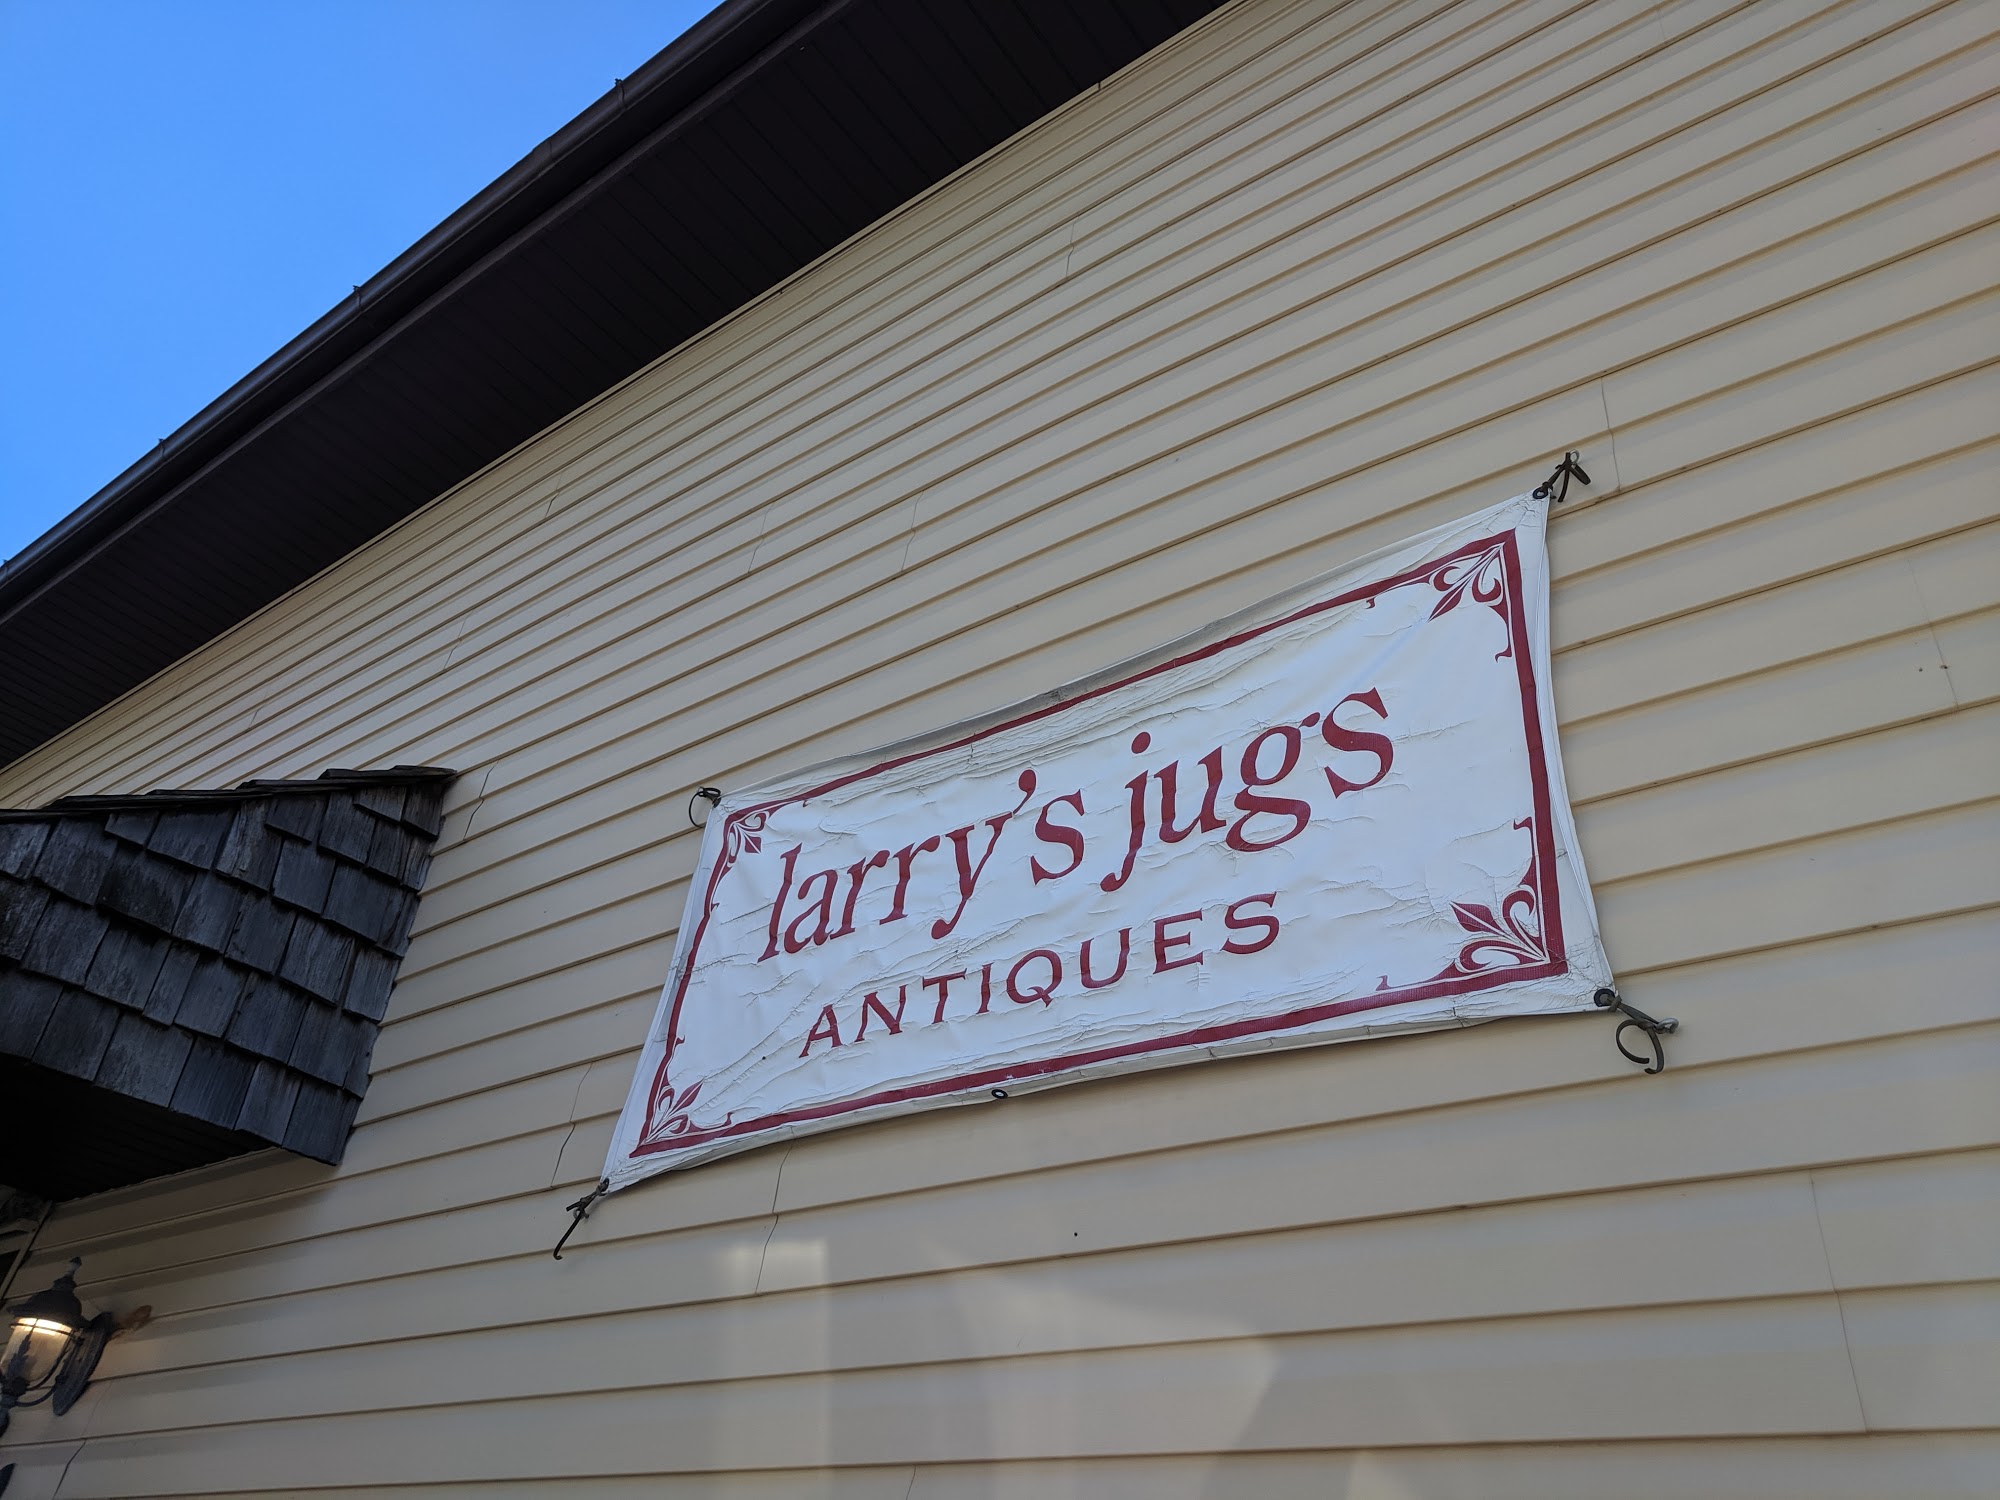 Larry's Jugs & Antiques